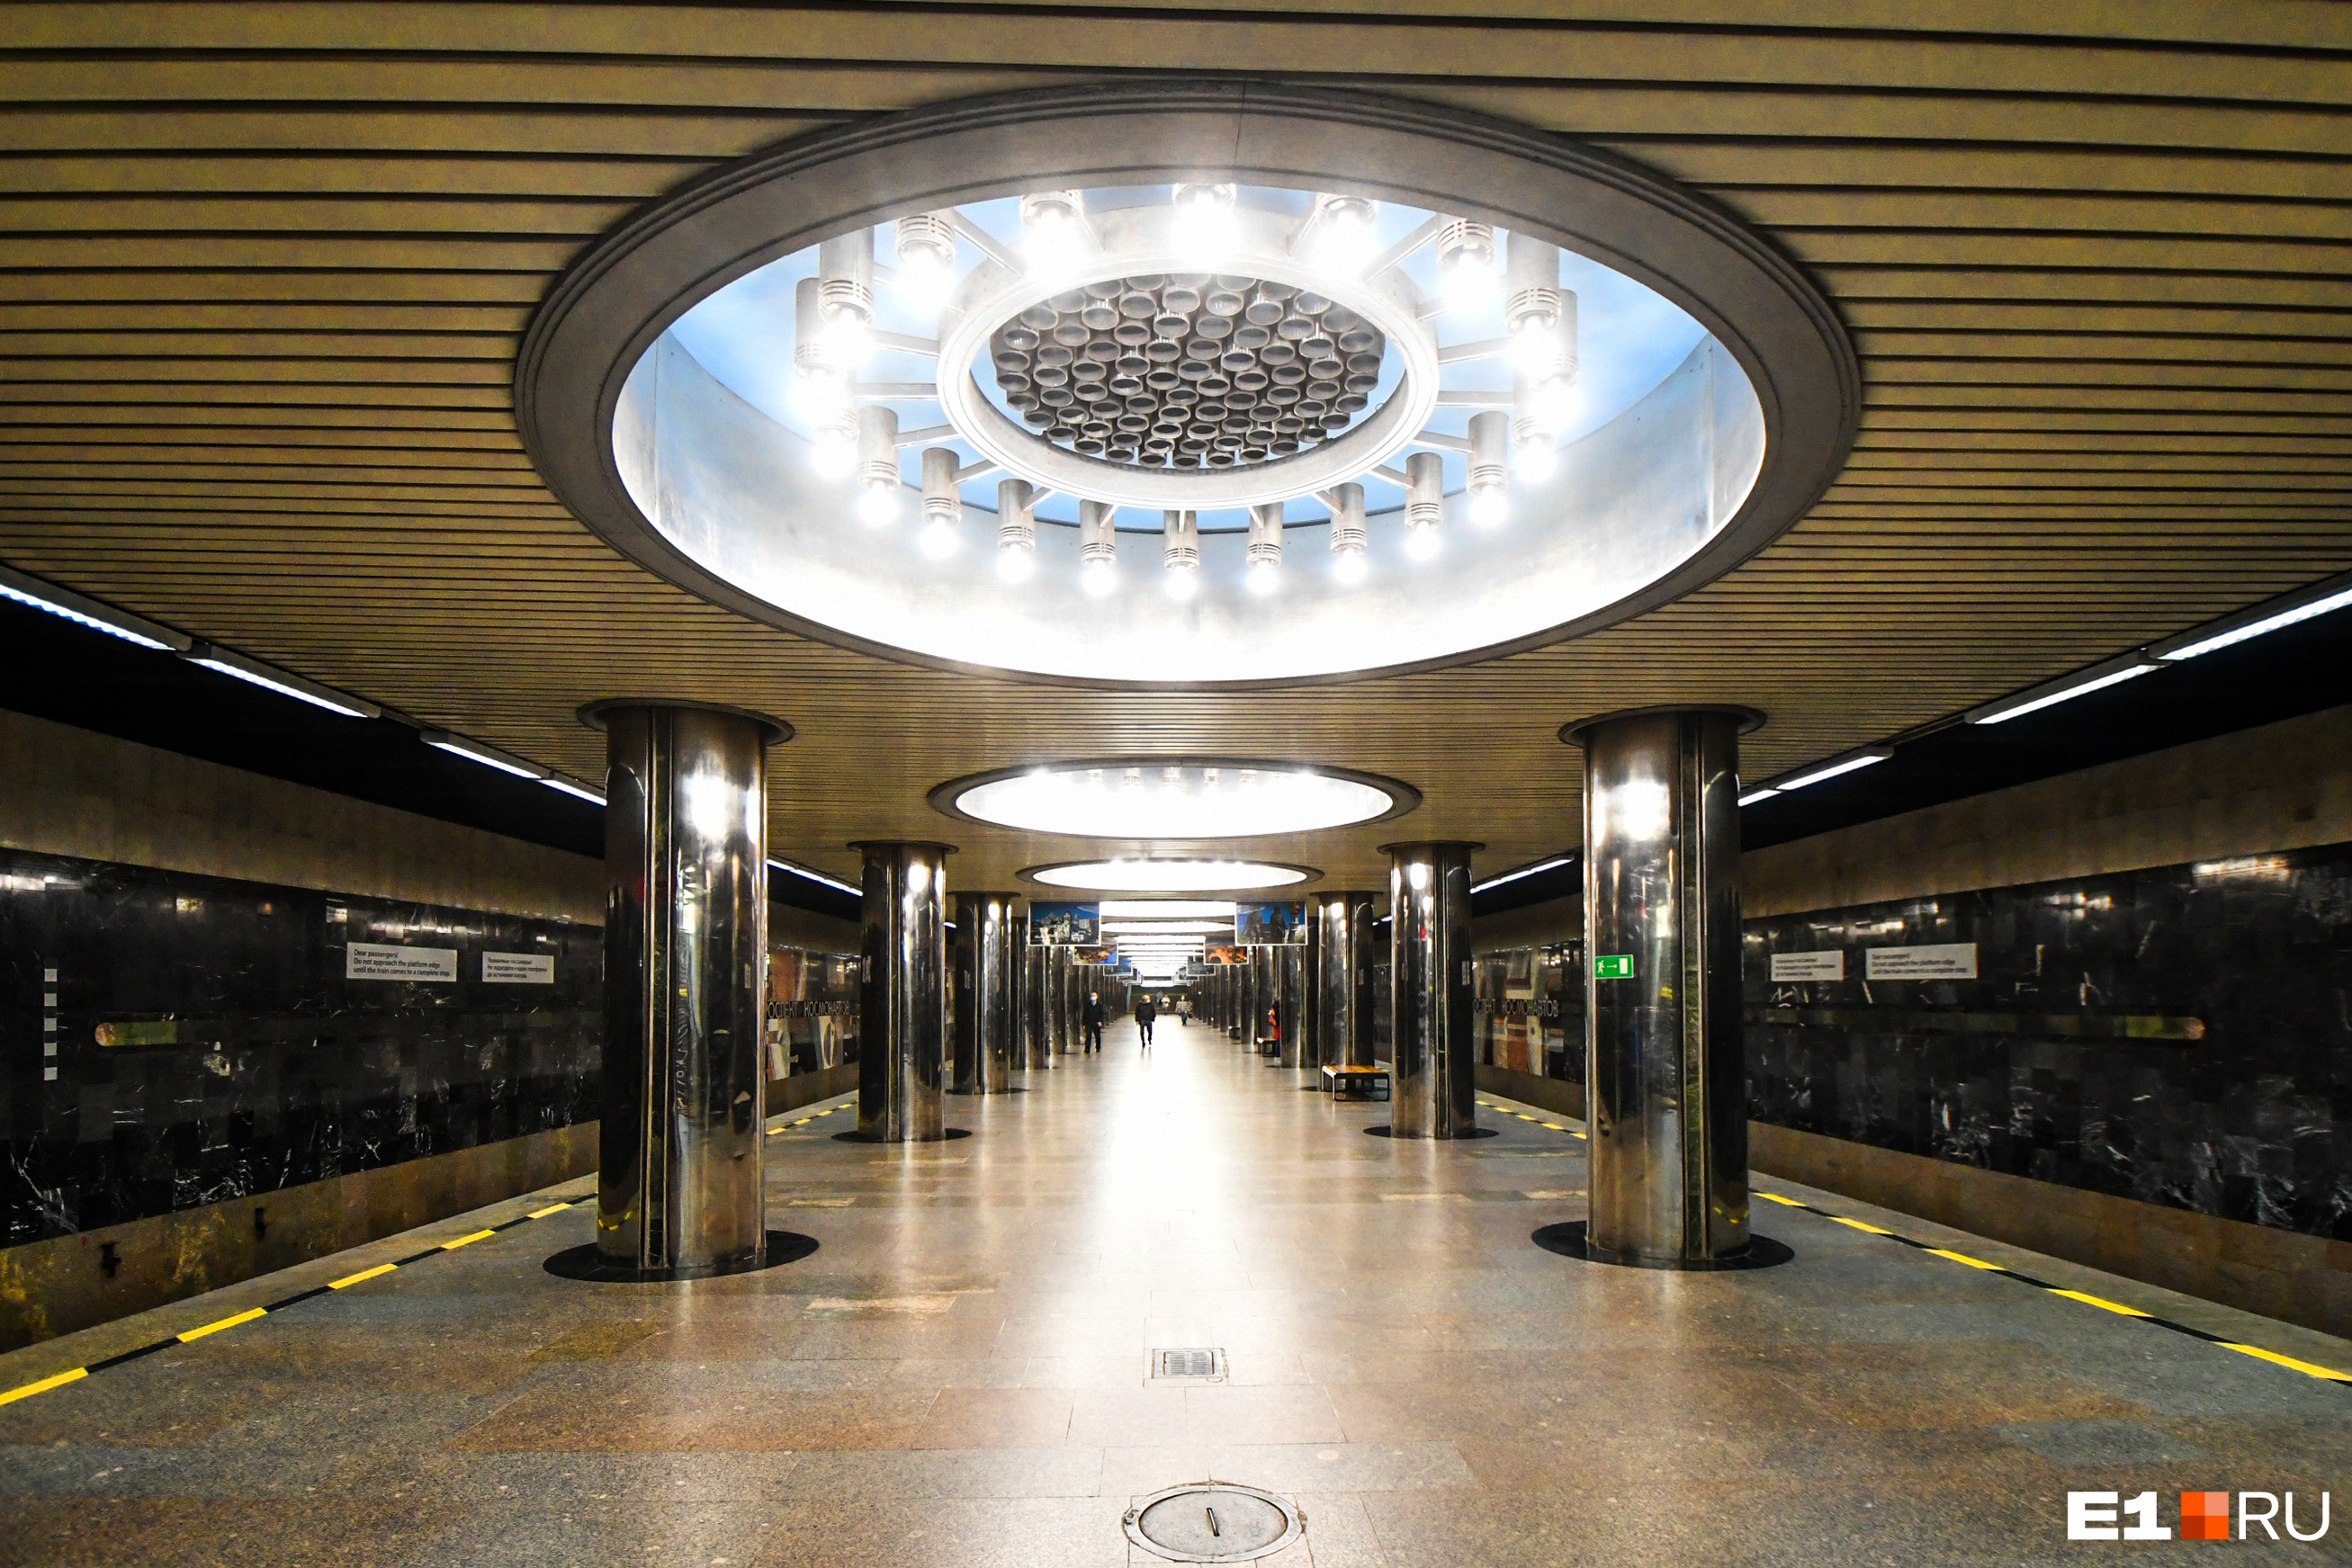 Весной метро Екатеринбурга опустело. В начале апреля 2020 года число пассажиров упало до исторического минимума